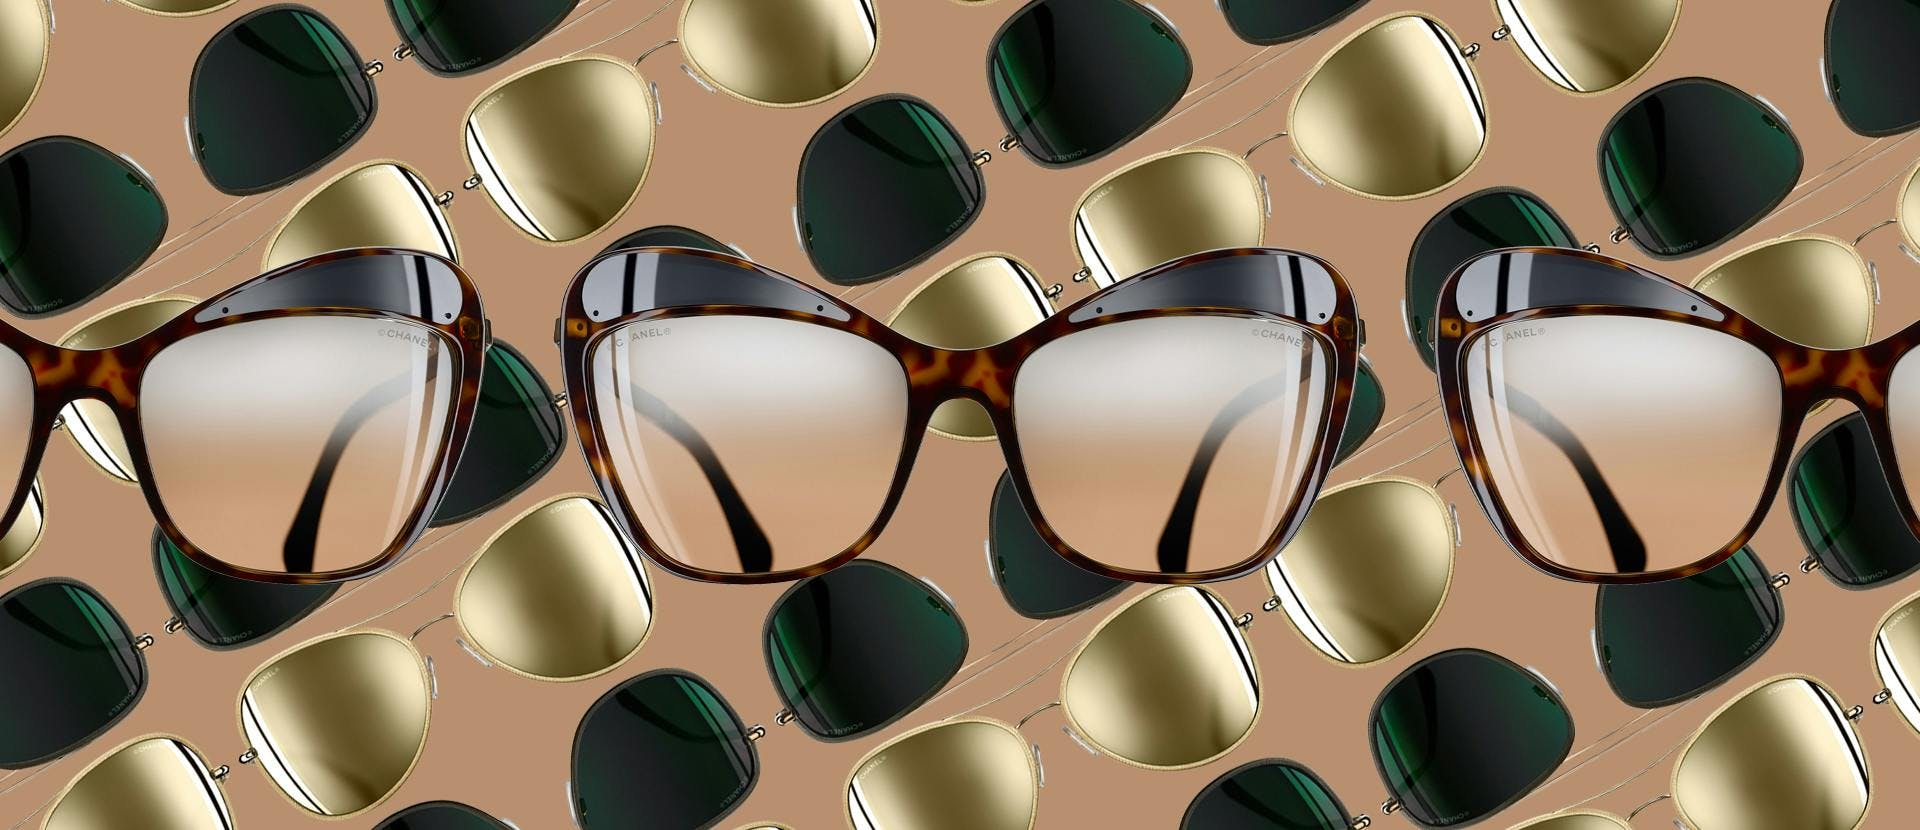 sunglasses accessories accessory glasses